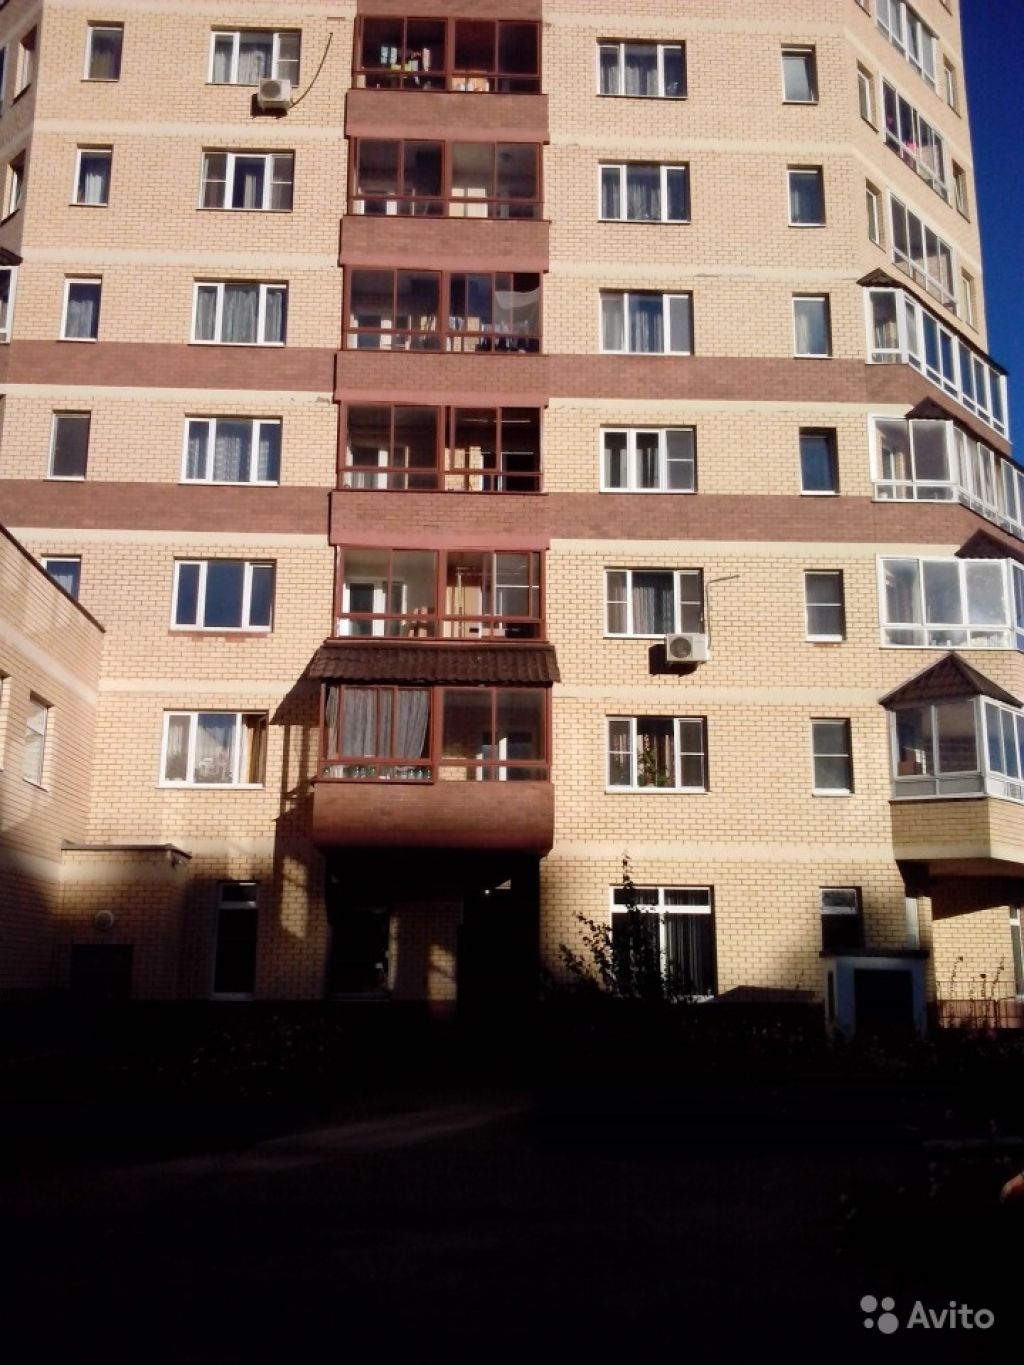 Продам квартиру 1-к квартира 39 м² на 10 этаже 23-этажного монолитного дома в Москве. Фото 1